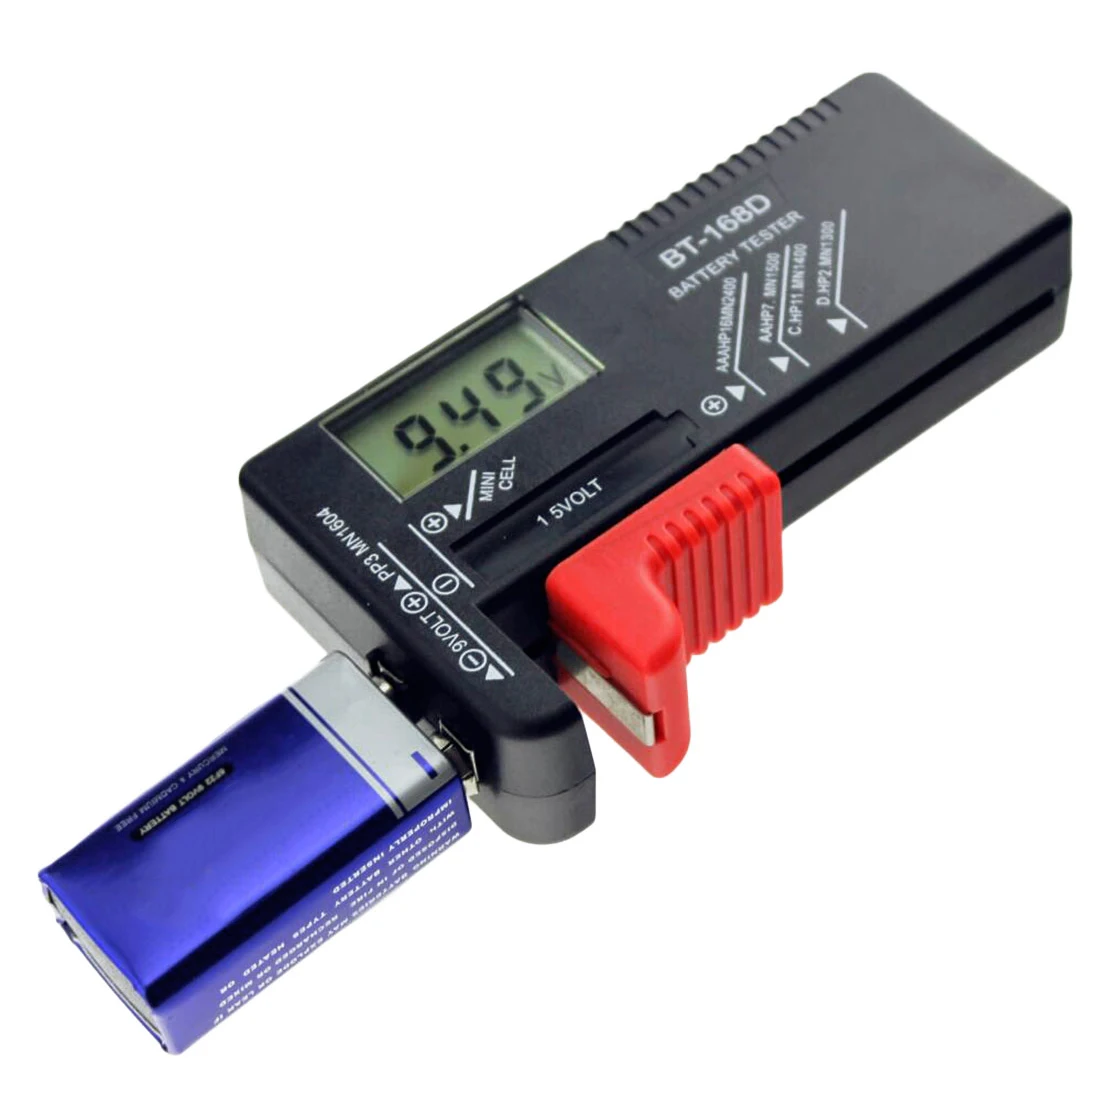 BT168D цифровой тестер емкости батареи умный электронный индикатор питания измерительный прибор для 9V 1,5 V AA AAA тестер клеток